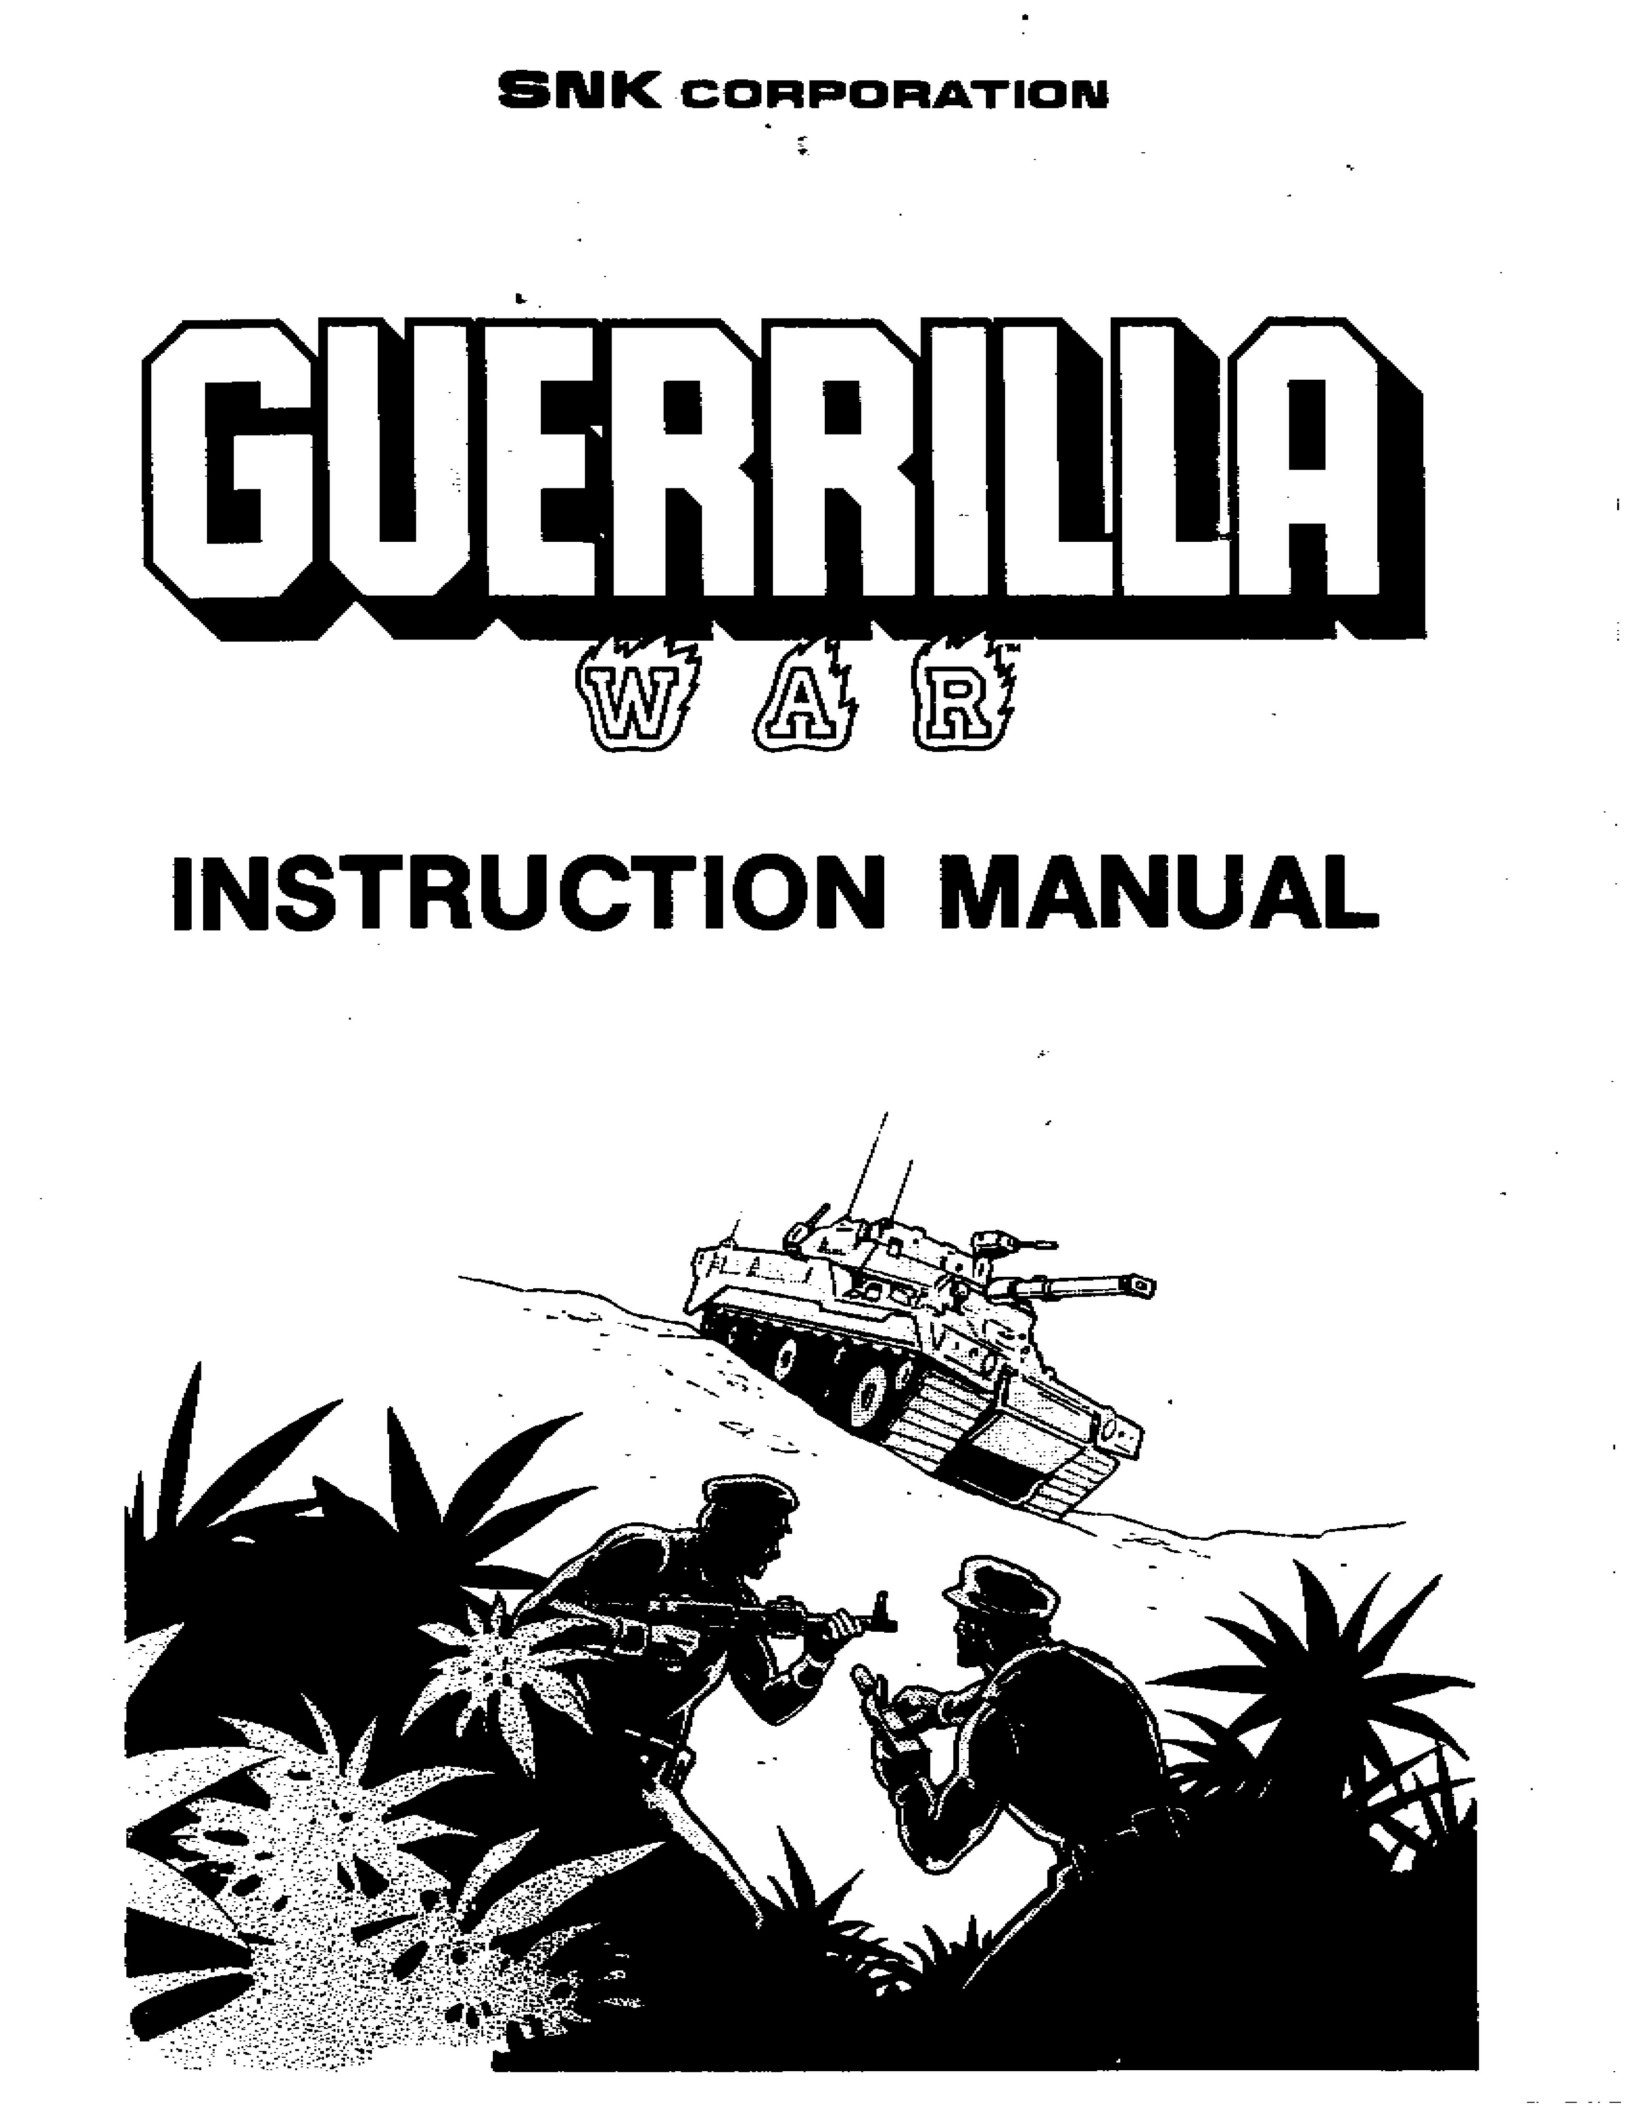 Guerrilla War